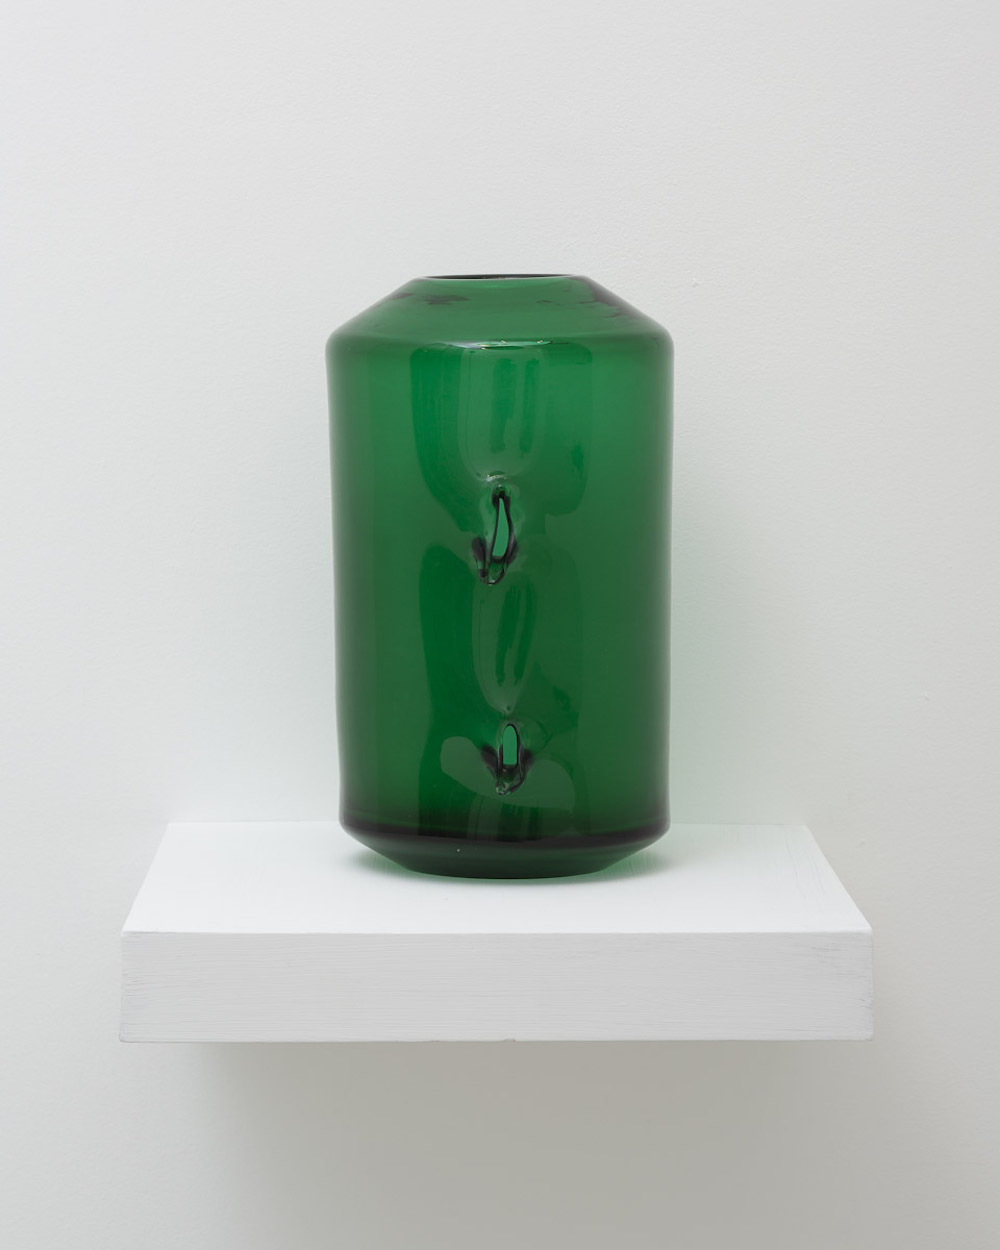 Lucio Fontana, <i>Concetto spaziale</i>, 1965, Murano glass, 12 1/4 x 7 x 7 5/8 inches (31.1 x 17.8 x 19.4 cm)